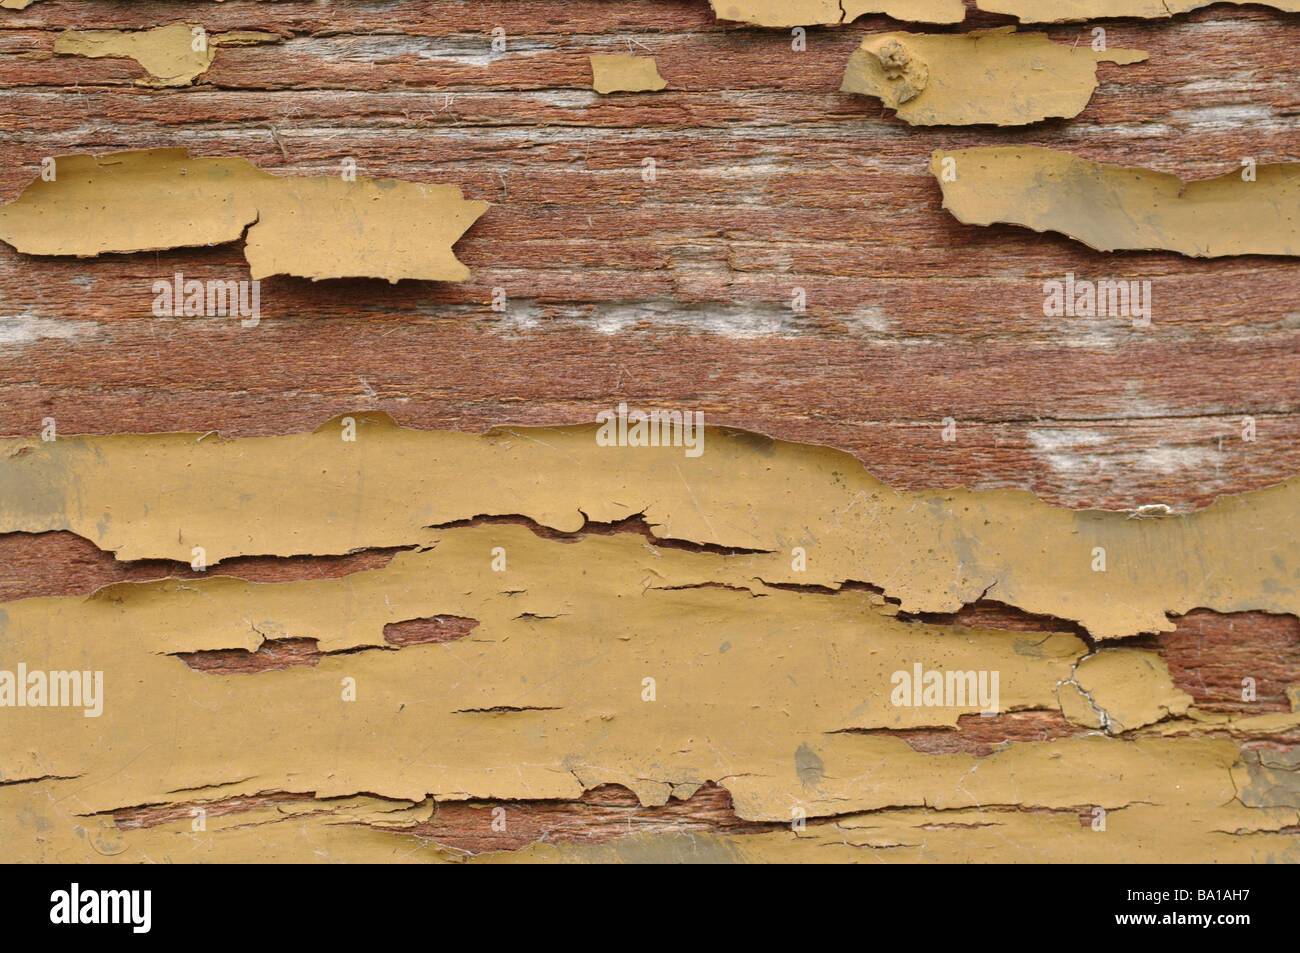 Grande image de vieux bois avec la peinture écaillée Banque D'Images